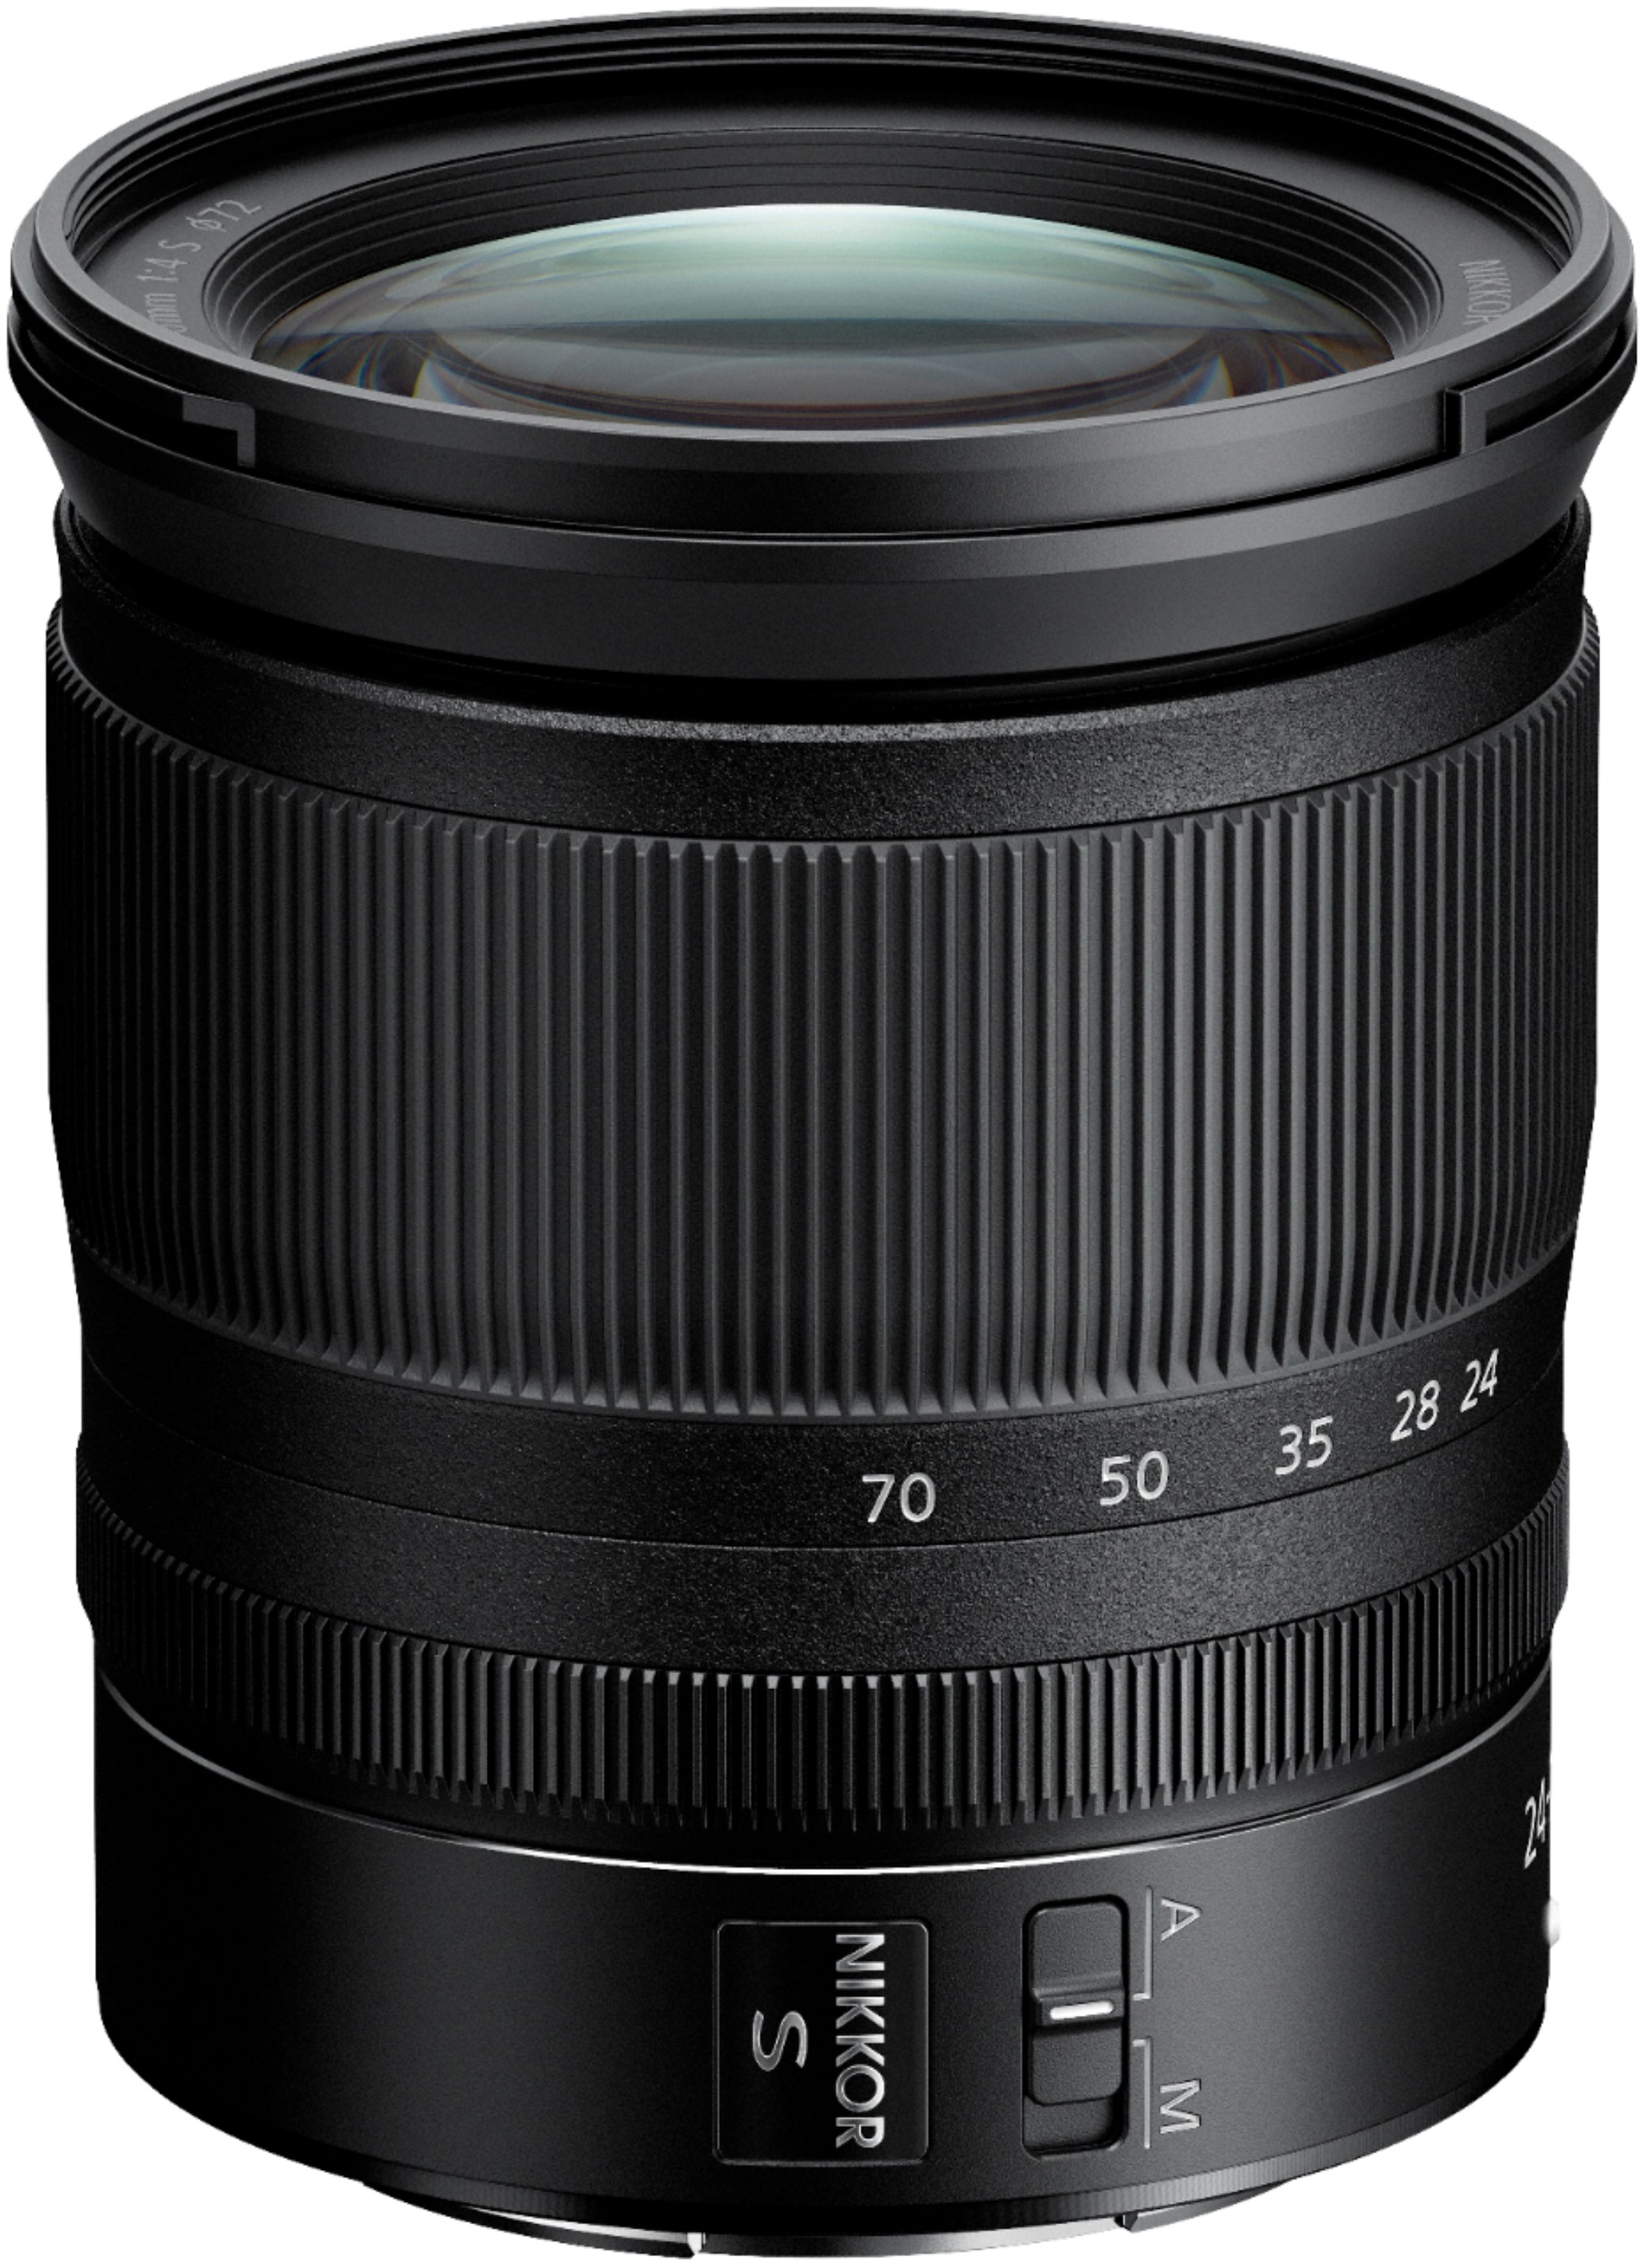 NIKKOR Z 24-70mm f/4 S Standard Zoom Lens for Nikon Z Cameras